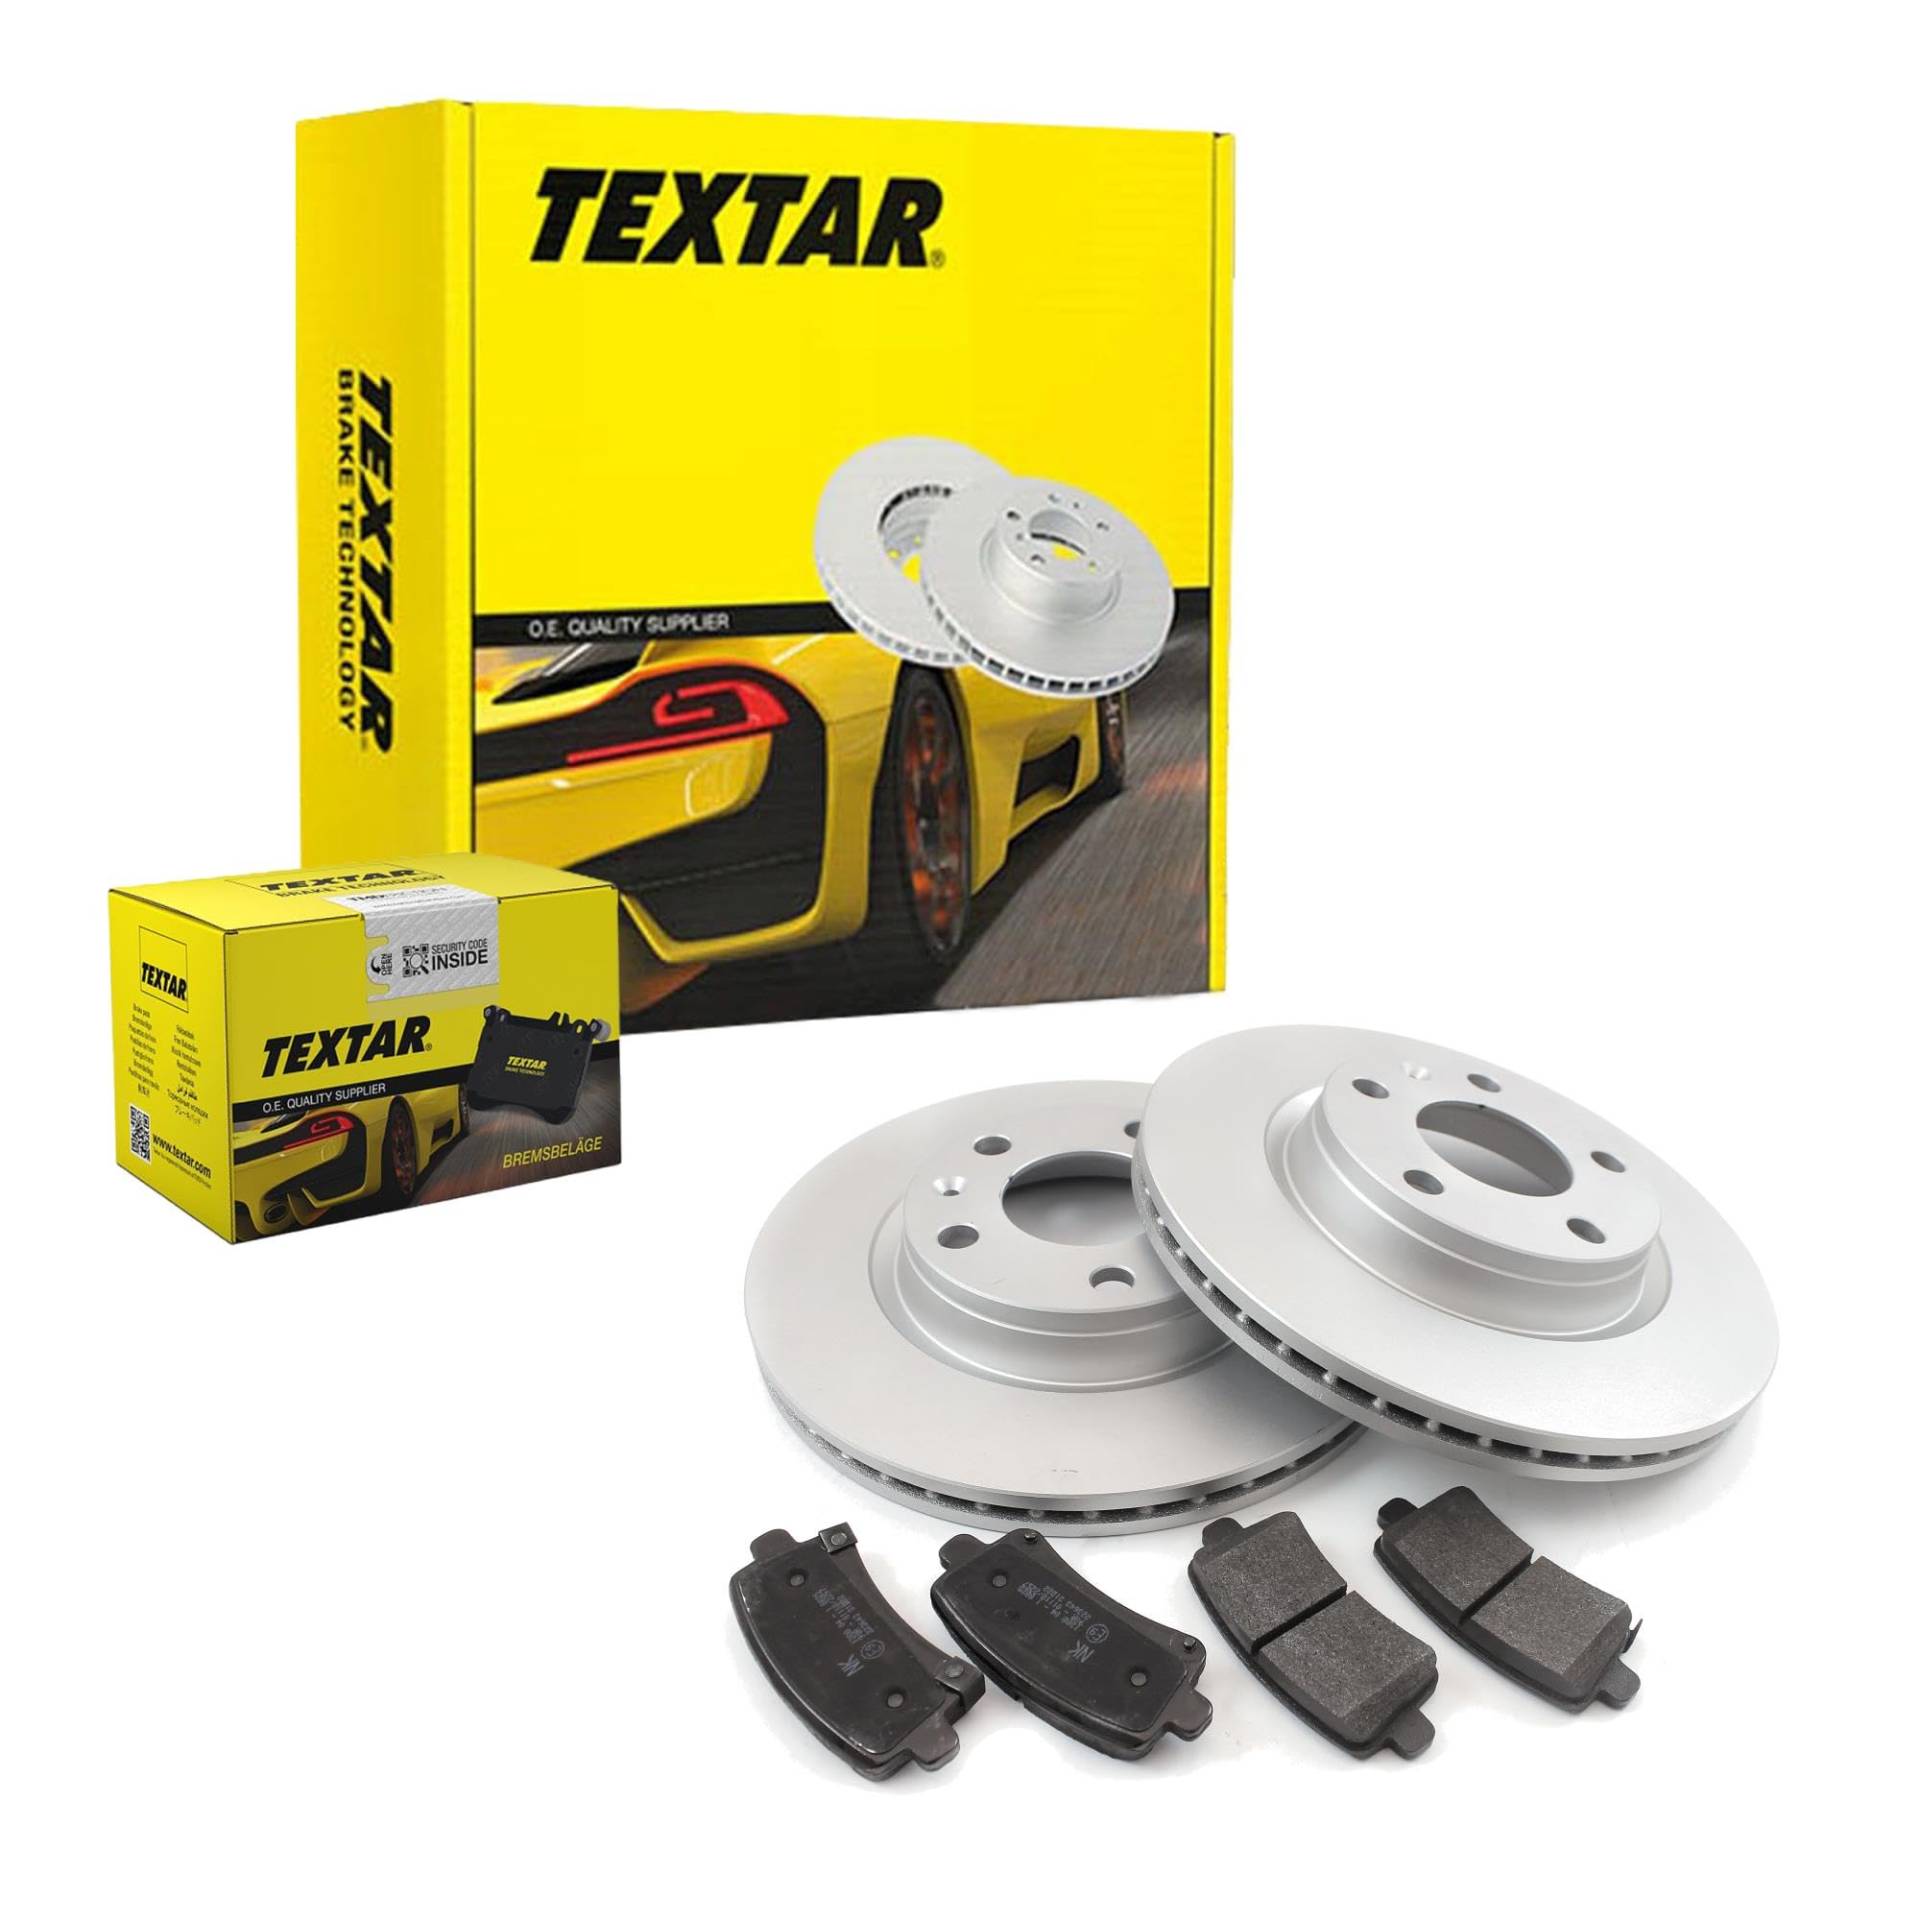 TEXTAR Bremsen Set Bremsscheiben Scheibenbremsen Ø280 belüftet beschichtet vorne + Bremsbeläge Bremsklötze für B-Klasse A-Klasse CLA Coupe von Generic